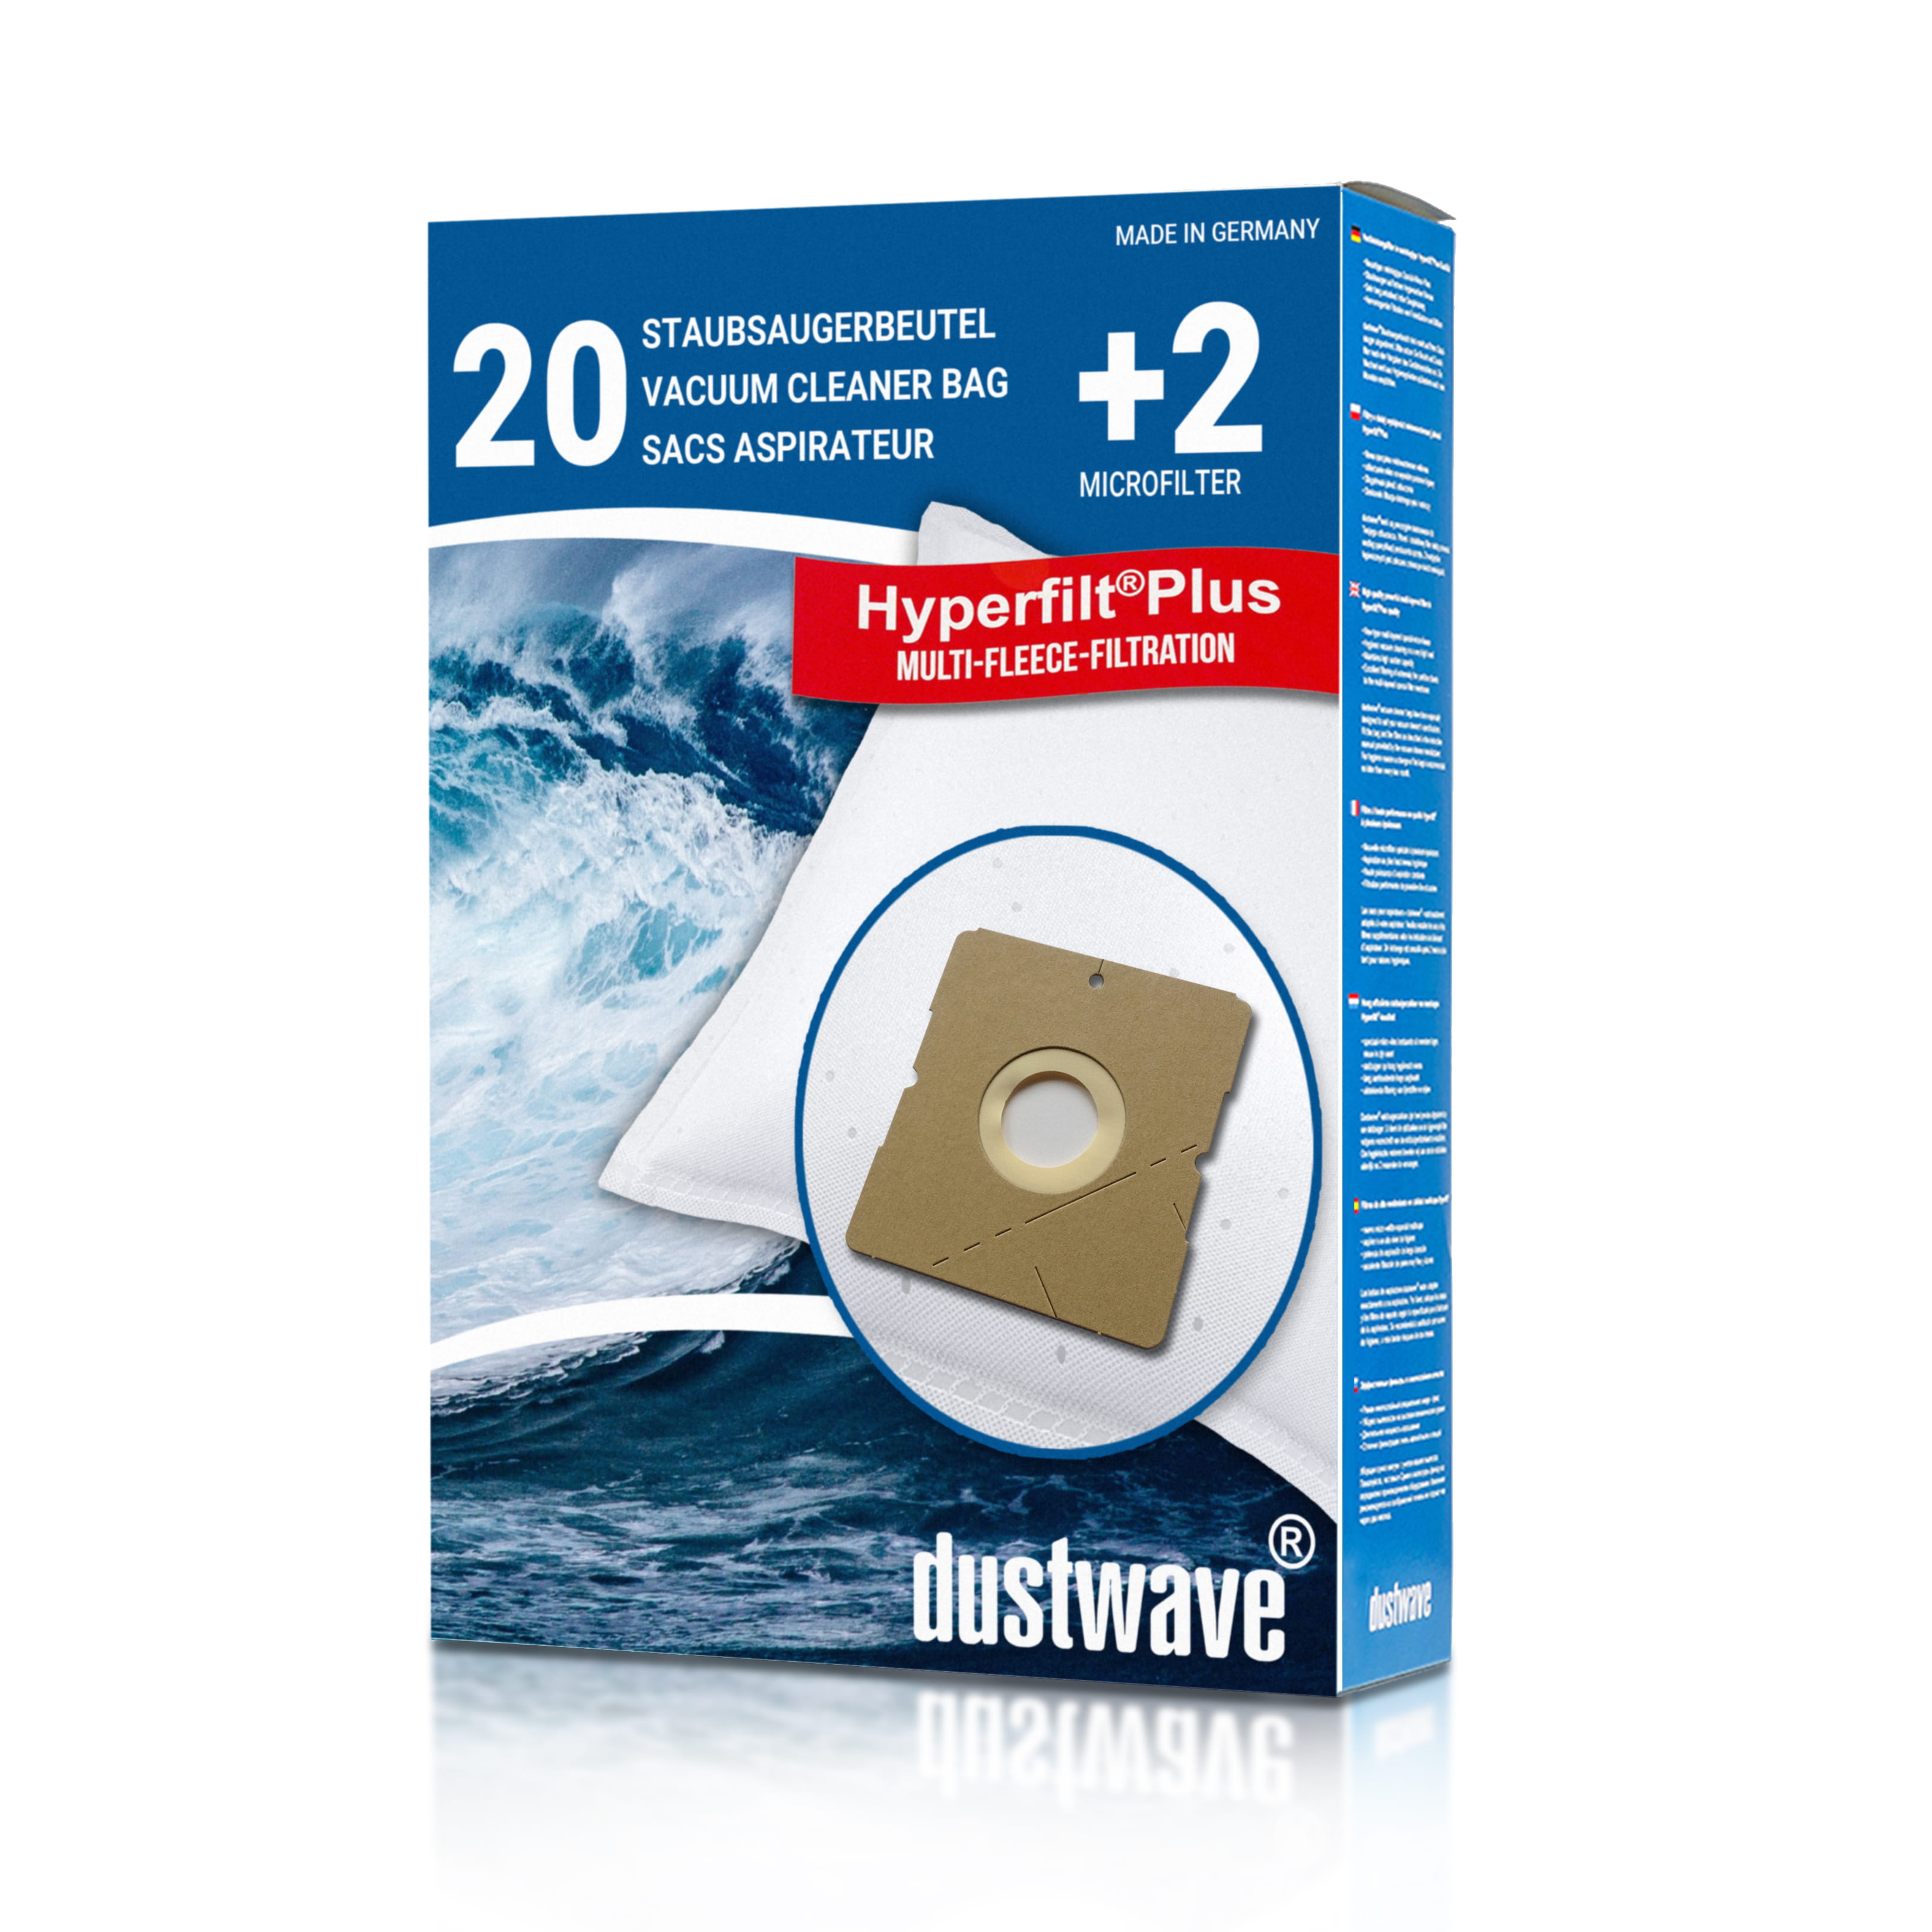 Dustwave® 20 Staubsaugerbeutel für Hoover TDC2000 001 - hocheffizient, mehrlagiges Mikrovlies mit Hygieneverschluss - Made in Germany